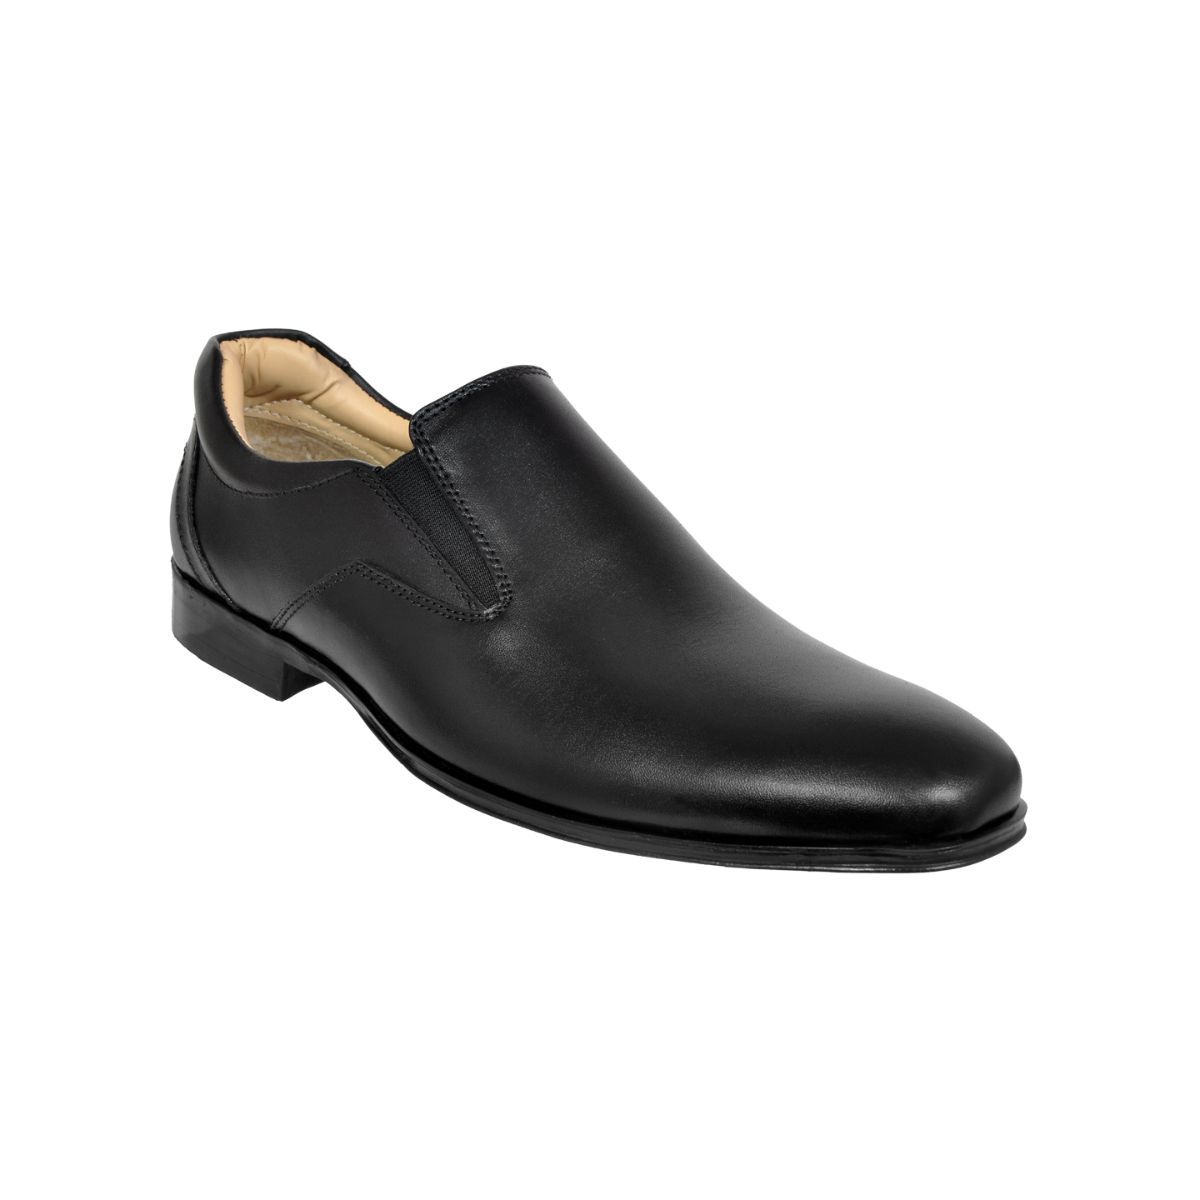 Allen Cooper Black Formal Shoes For Men - 7